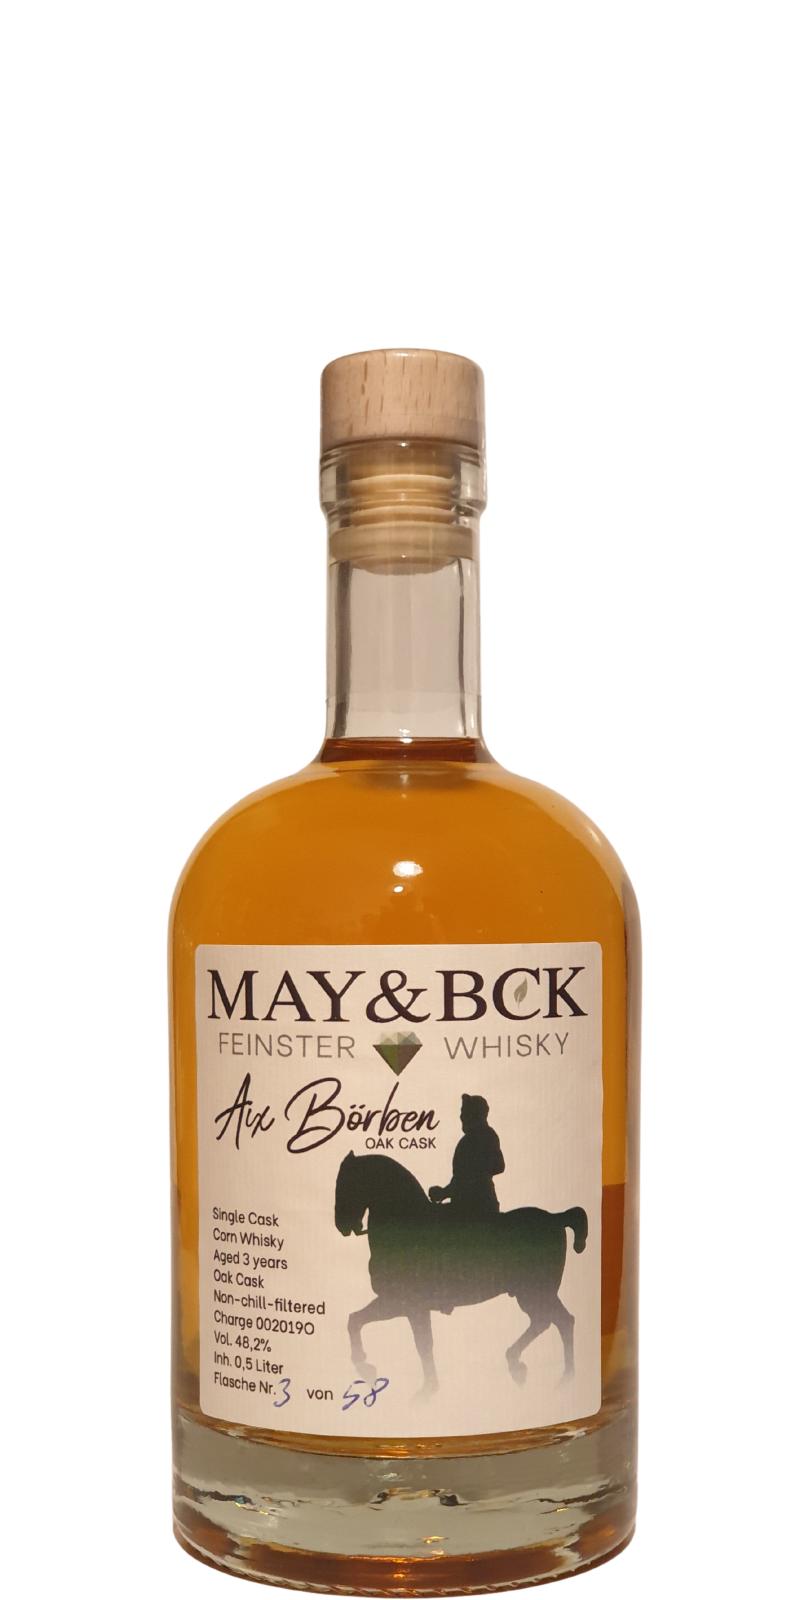 May & Bck 2019 Aix Borben Oak Corn Whisky 30 litres German oak 2nd fill 48.2% 500ml